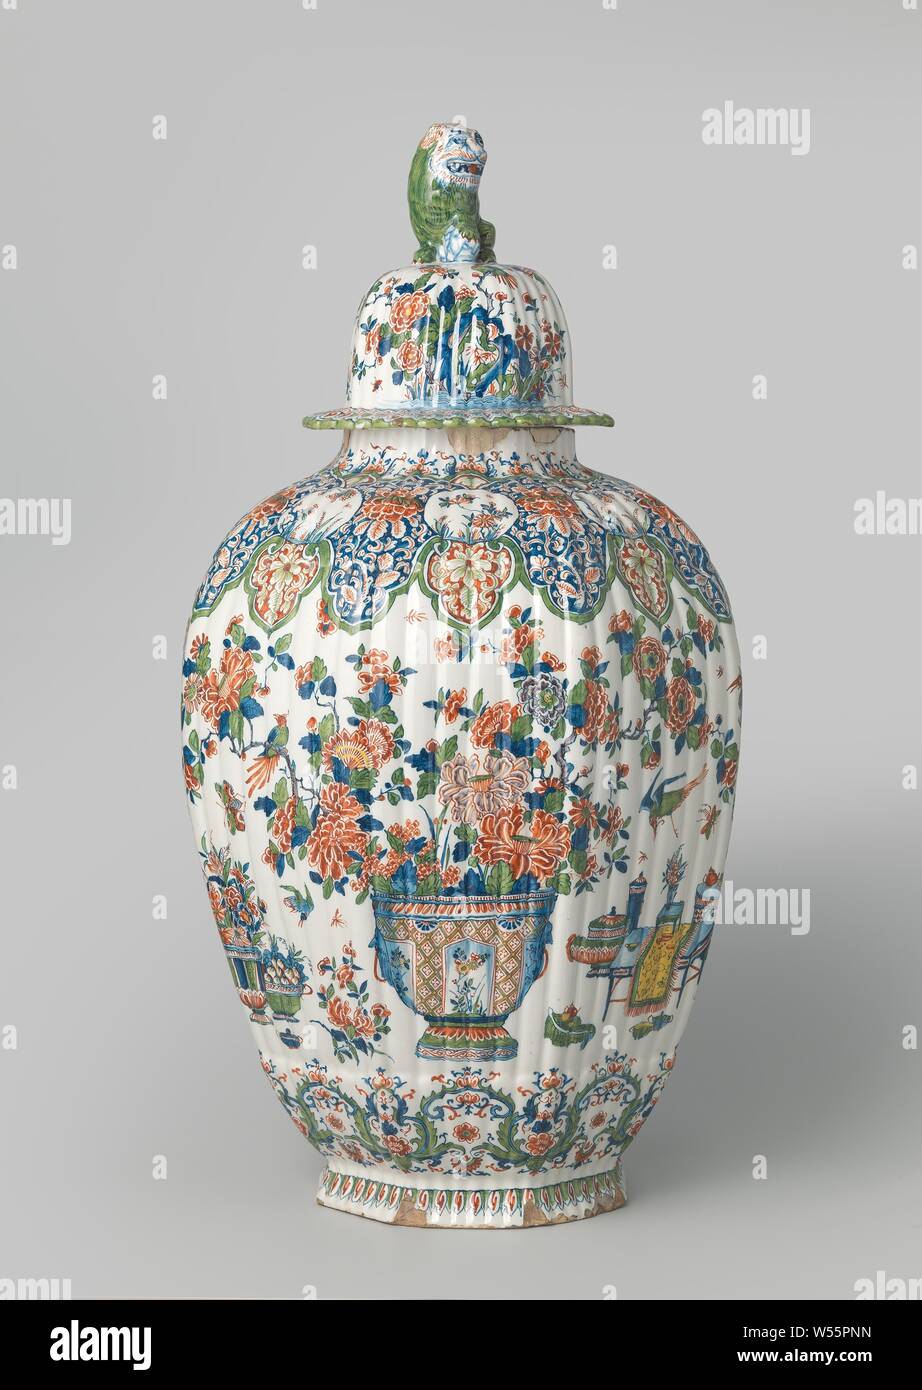 Deckel, die zu einem achteckigen gerippte Vase mit mehrfarbigem Dekor. Ähnliche Blumenbilder auf dem Deckel wie auf der Vase. Der Deckel wird durch eine grüne Löwe gekrönt, mit einem Bein auf einer Kugel., De Metaale Topf, Delft, 1691 - 1725, H 20 cm x T 19 cm Stockfoto